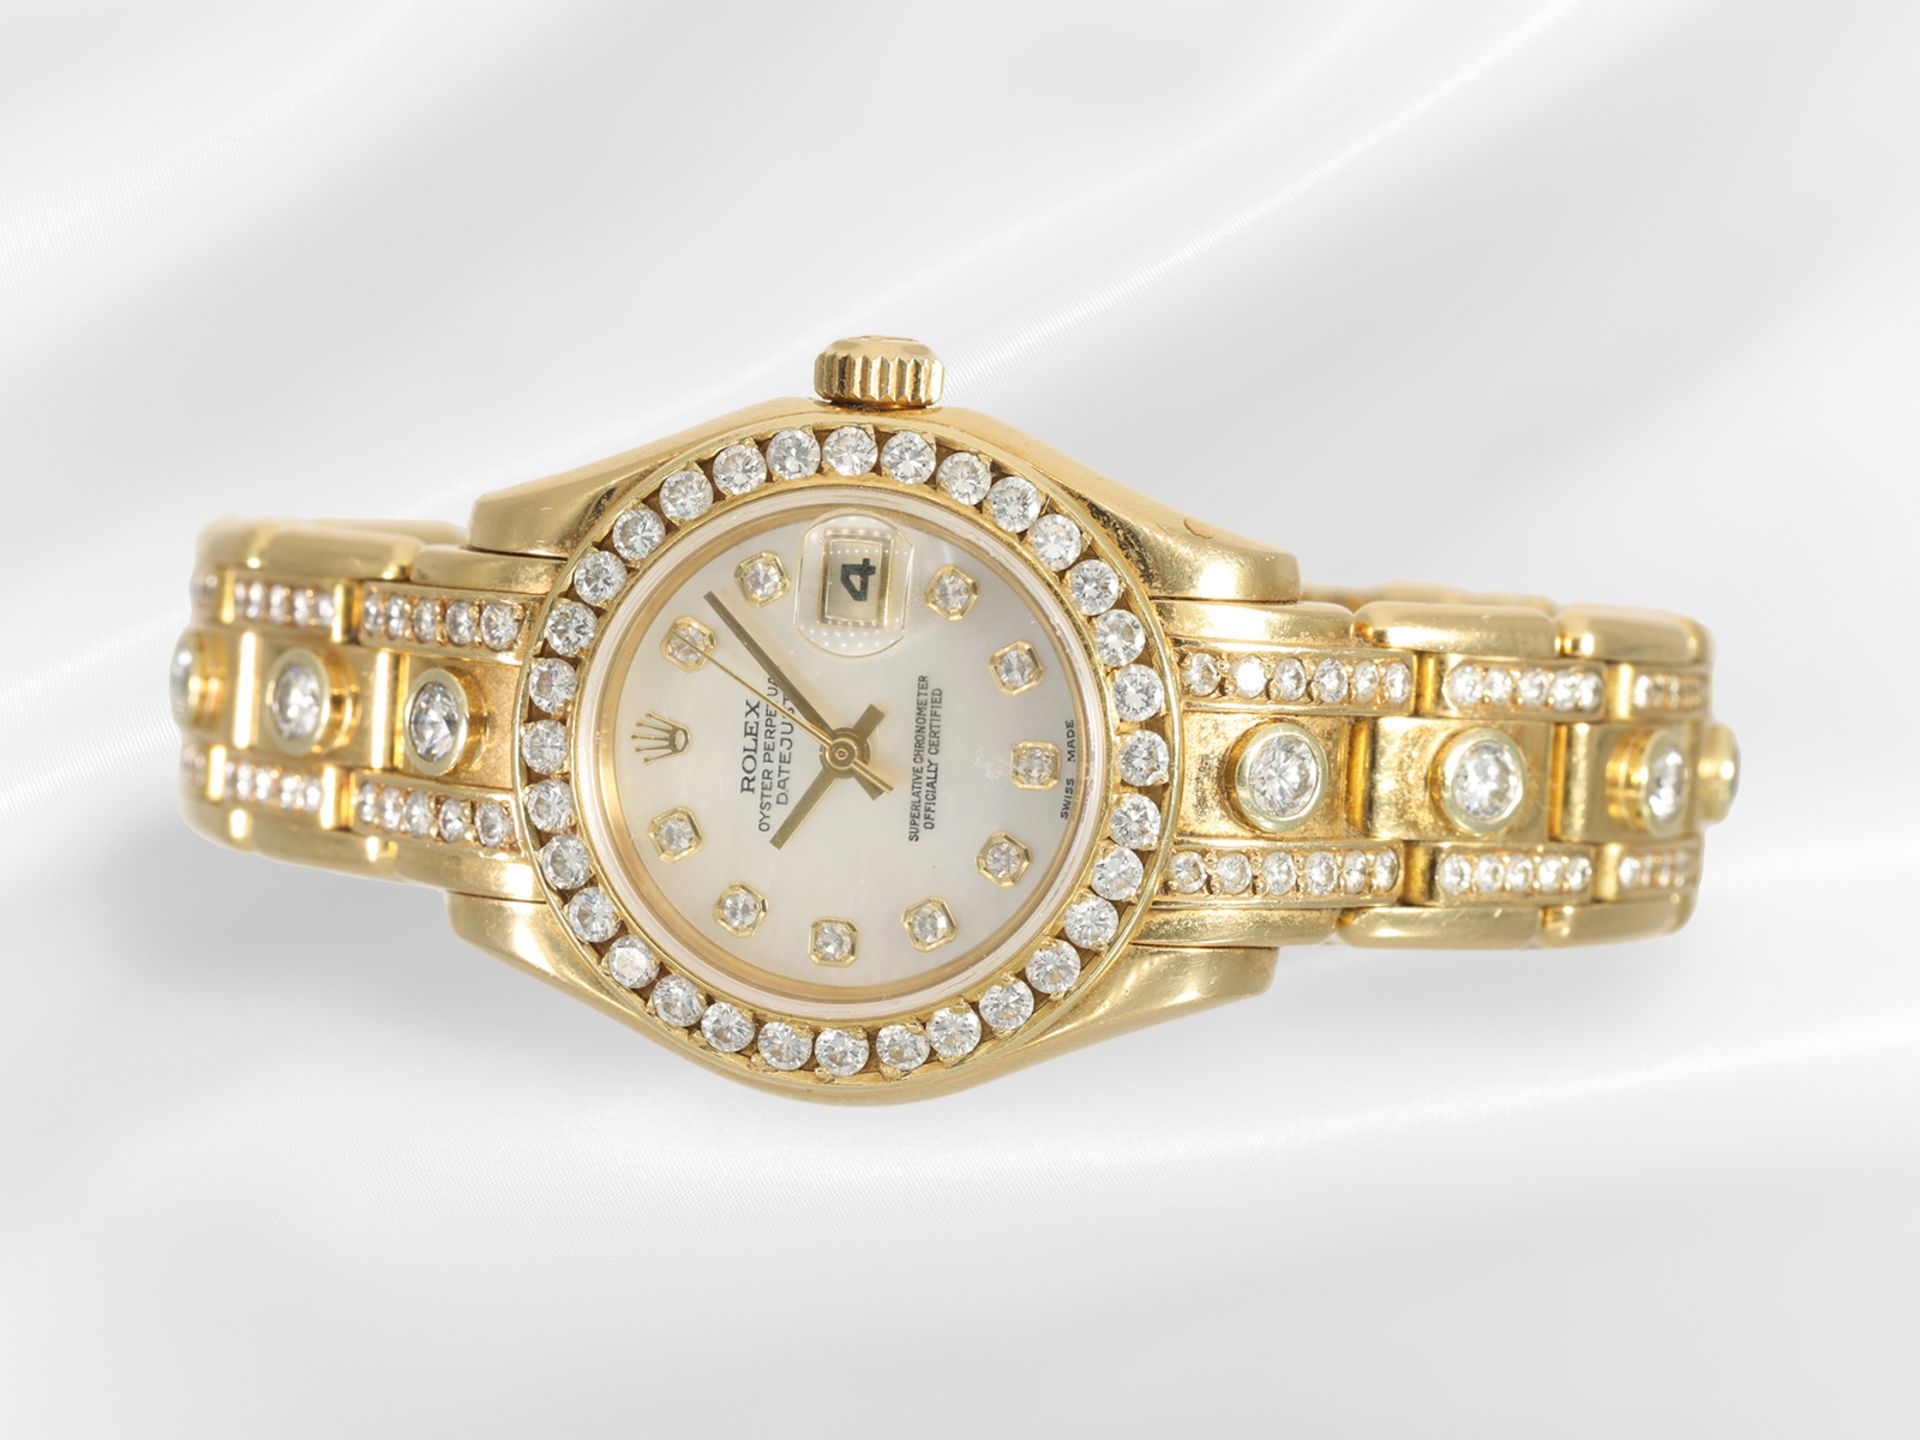 Armbanduhr: gesuchte luxuriöse Damenuhr Rolex Pearlmaster 29 mit Brillantbesatz und Diamantzifferbla - Bild 4 aus 6